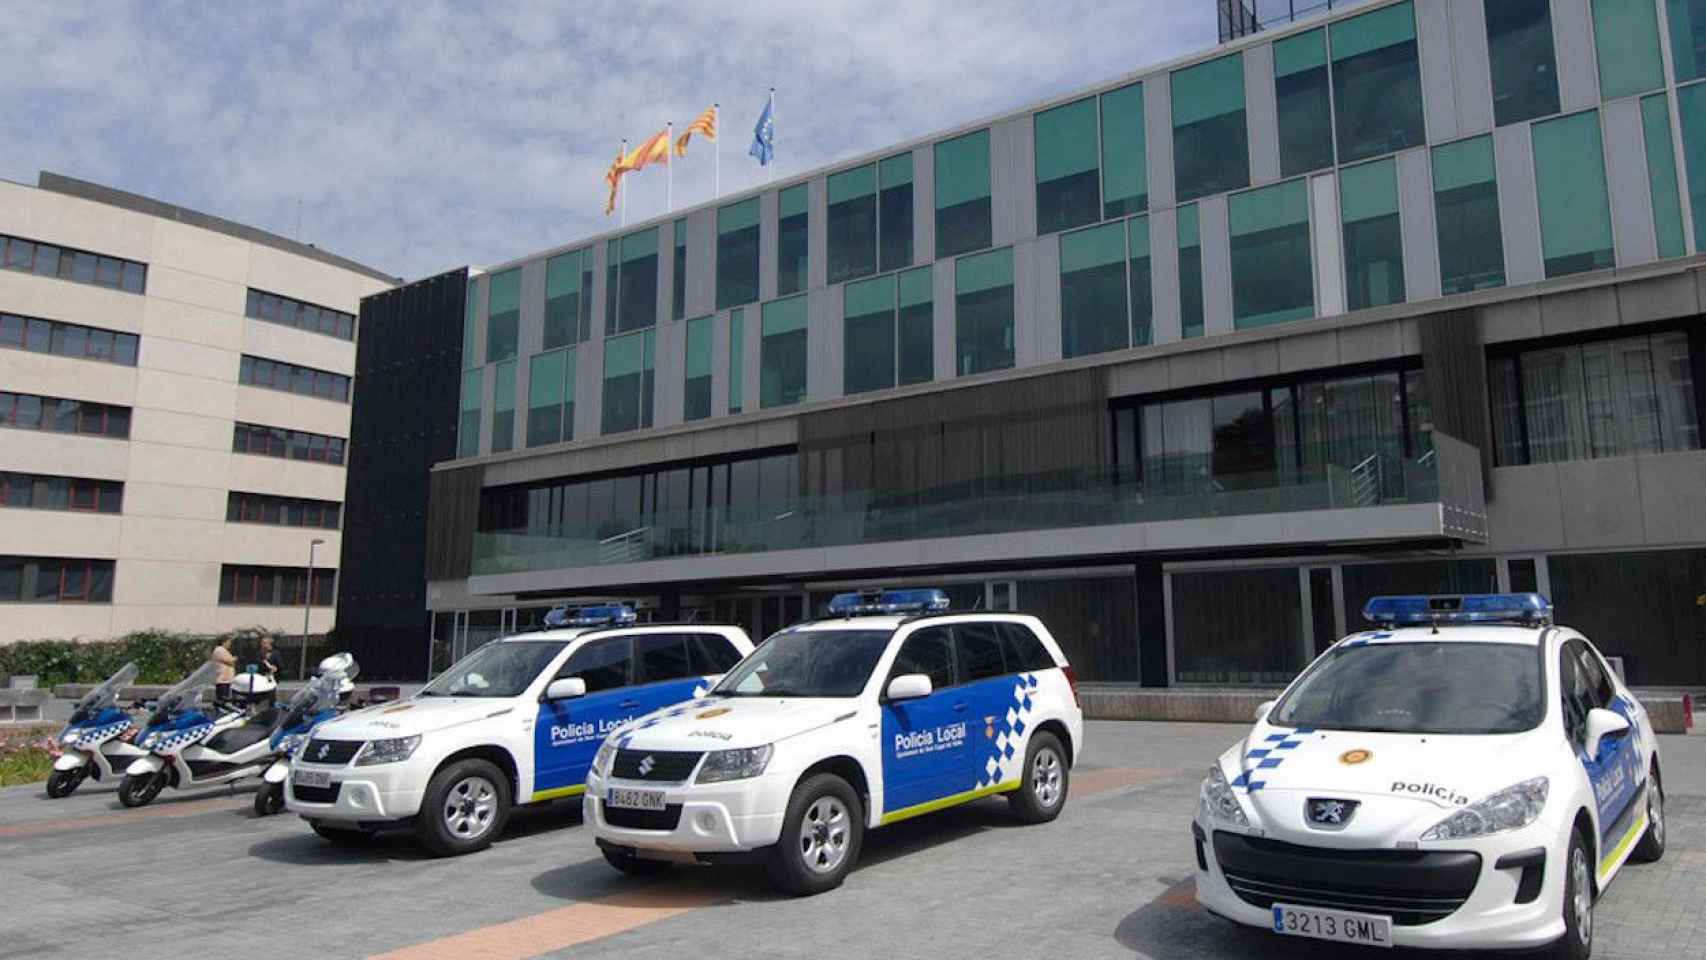 Policía local de Sant Cugat / POLICÍA LOCAL